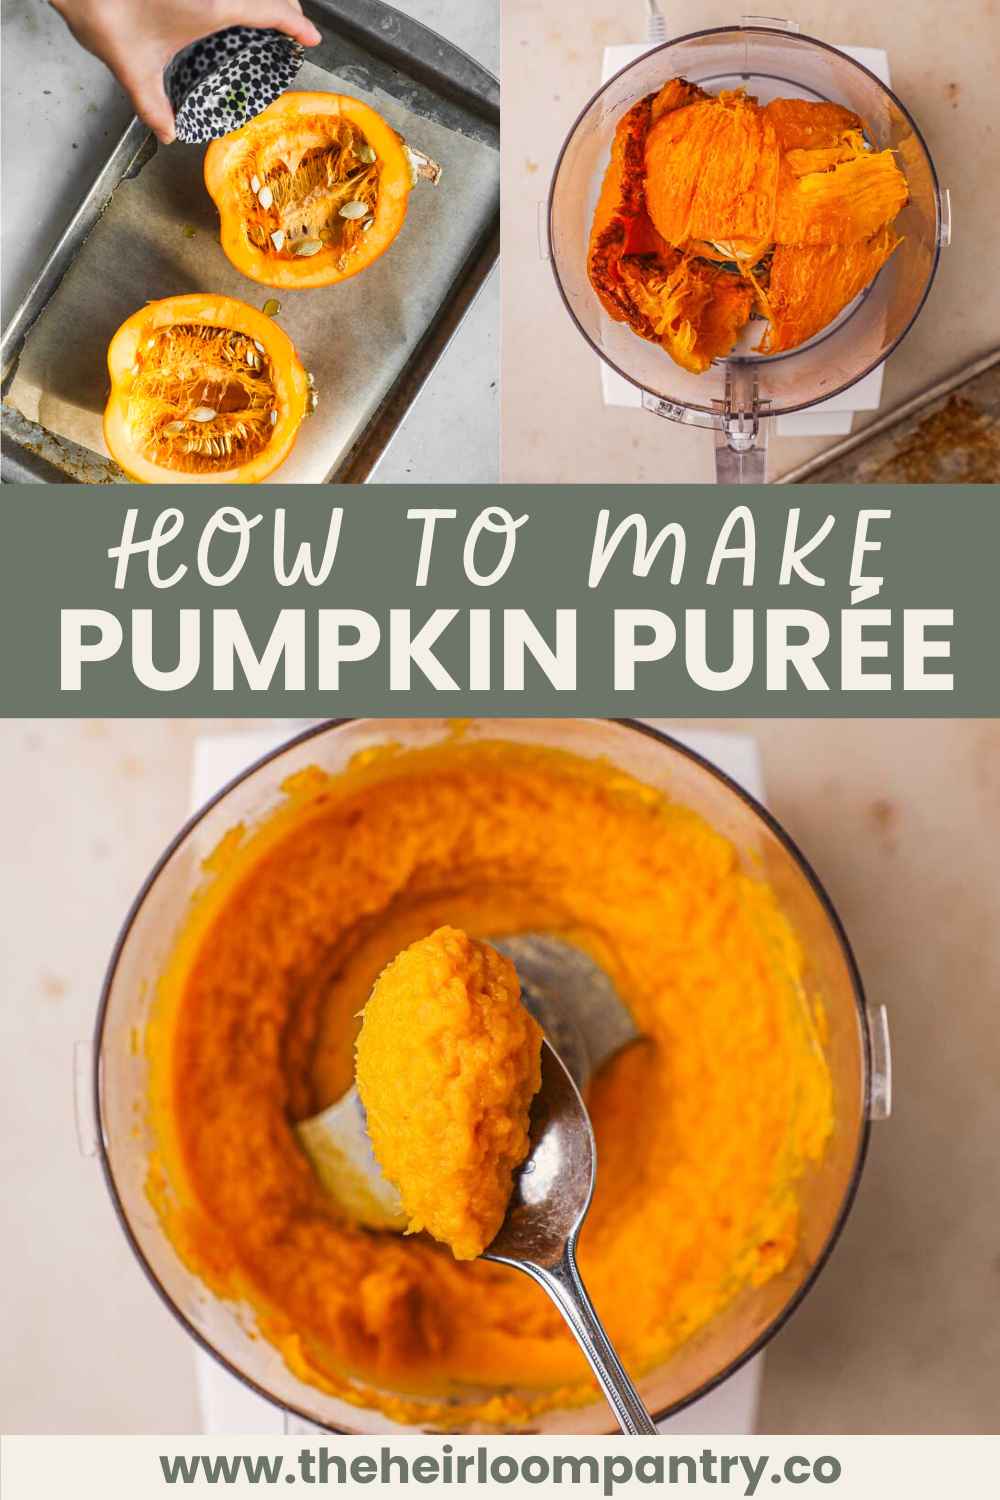 How to make pumpkin purée Pinterest pin.